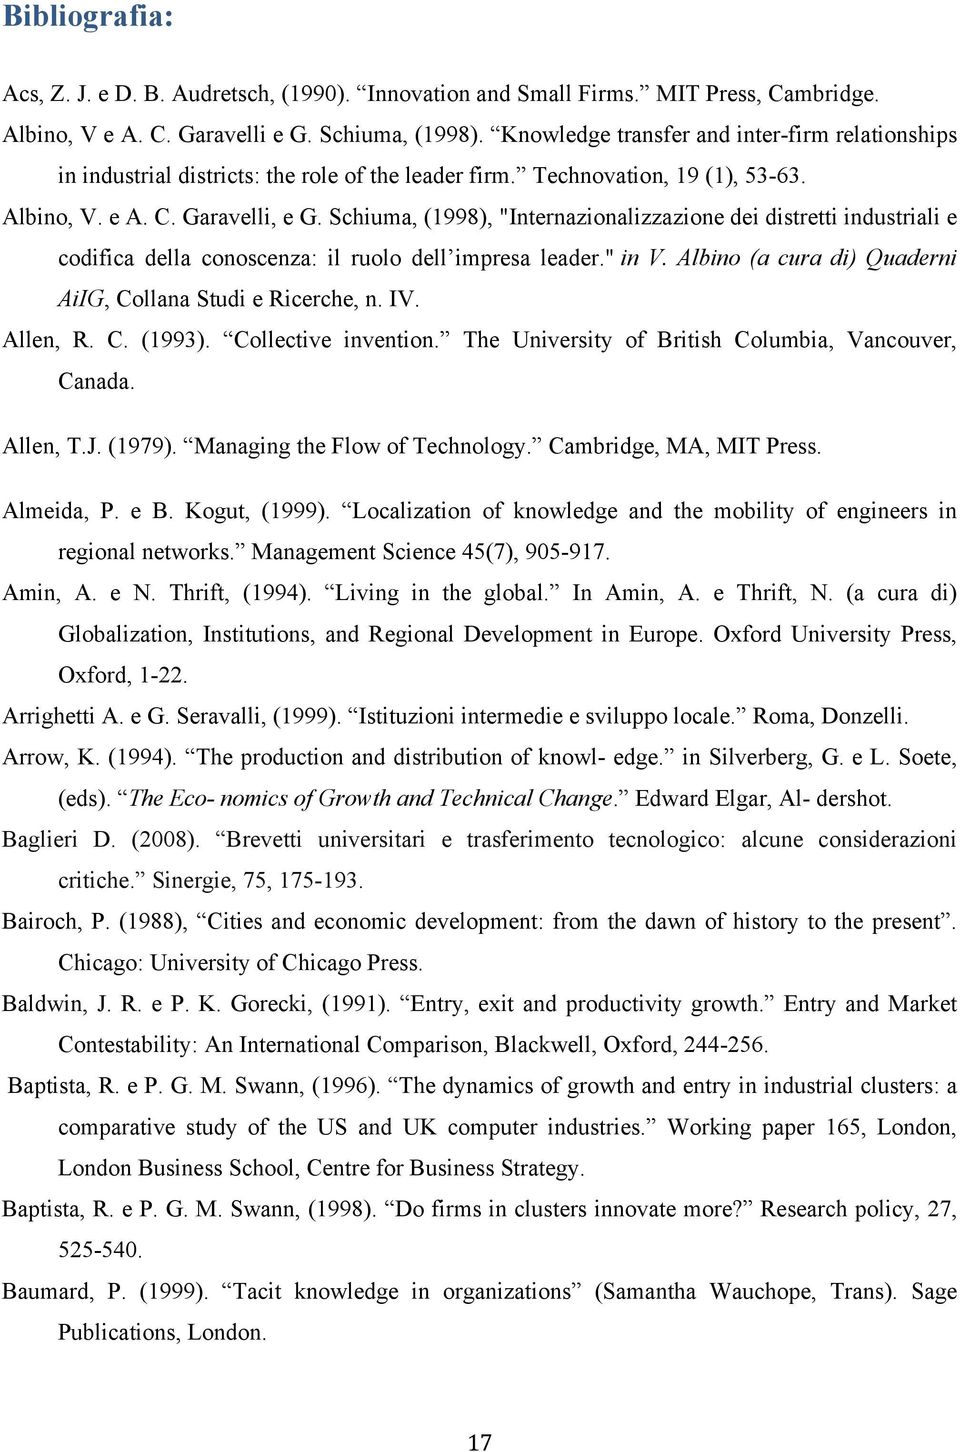 Schiuma, (1998), "Internazionalizzazione dei distretti industriali e codifica della conoscenza: il ruolo dell impresa leader." in V. Albino (a cura di) Quaderni AiIG, Collana Studi e Ricerche, n. IV.